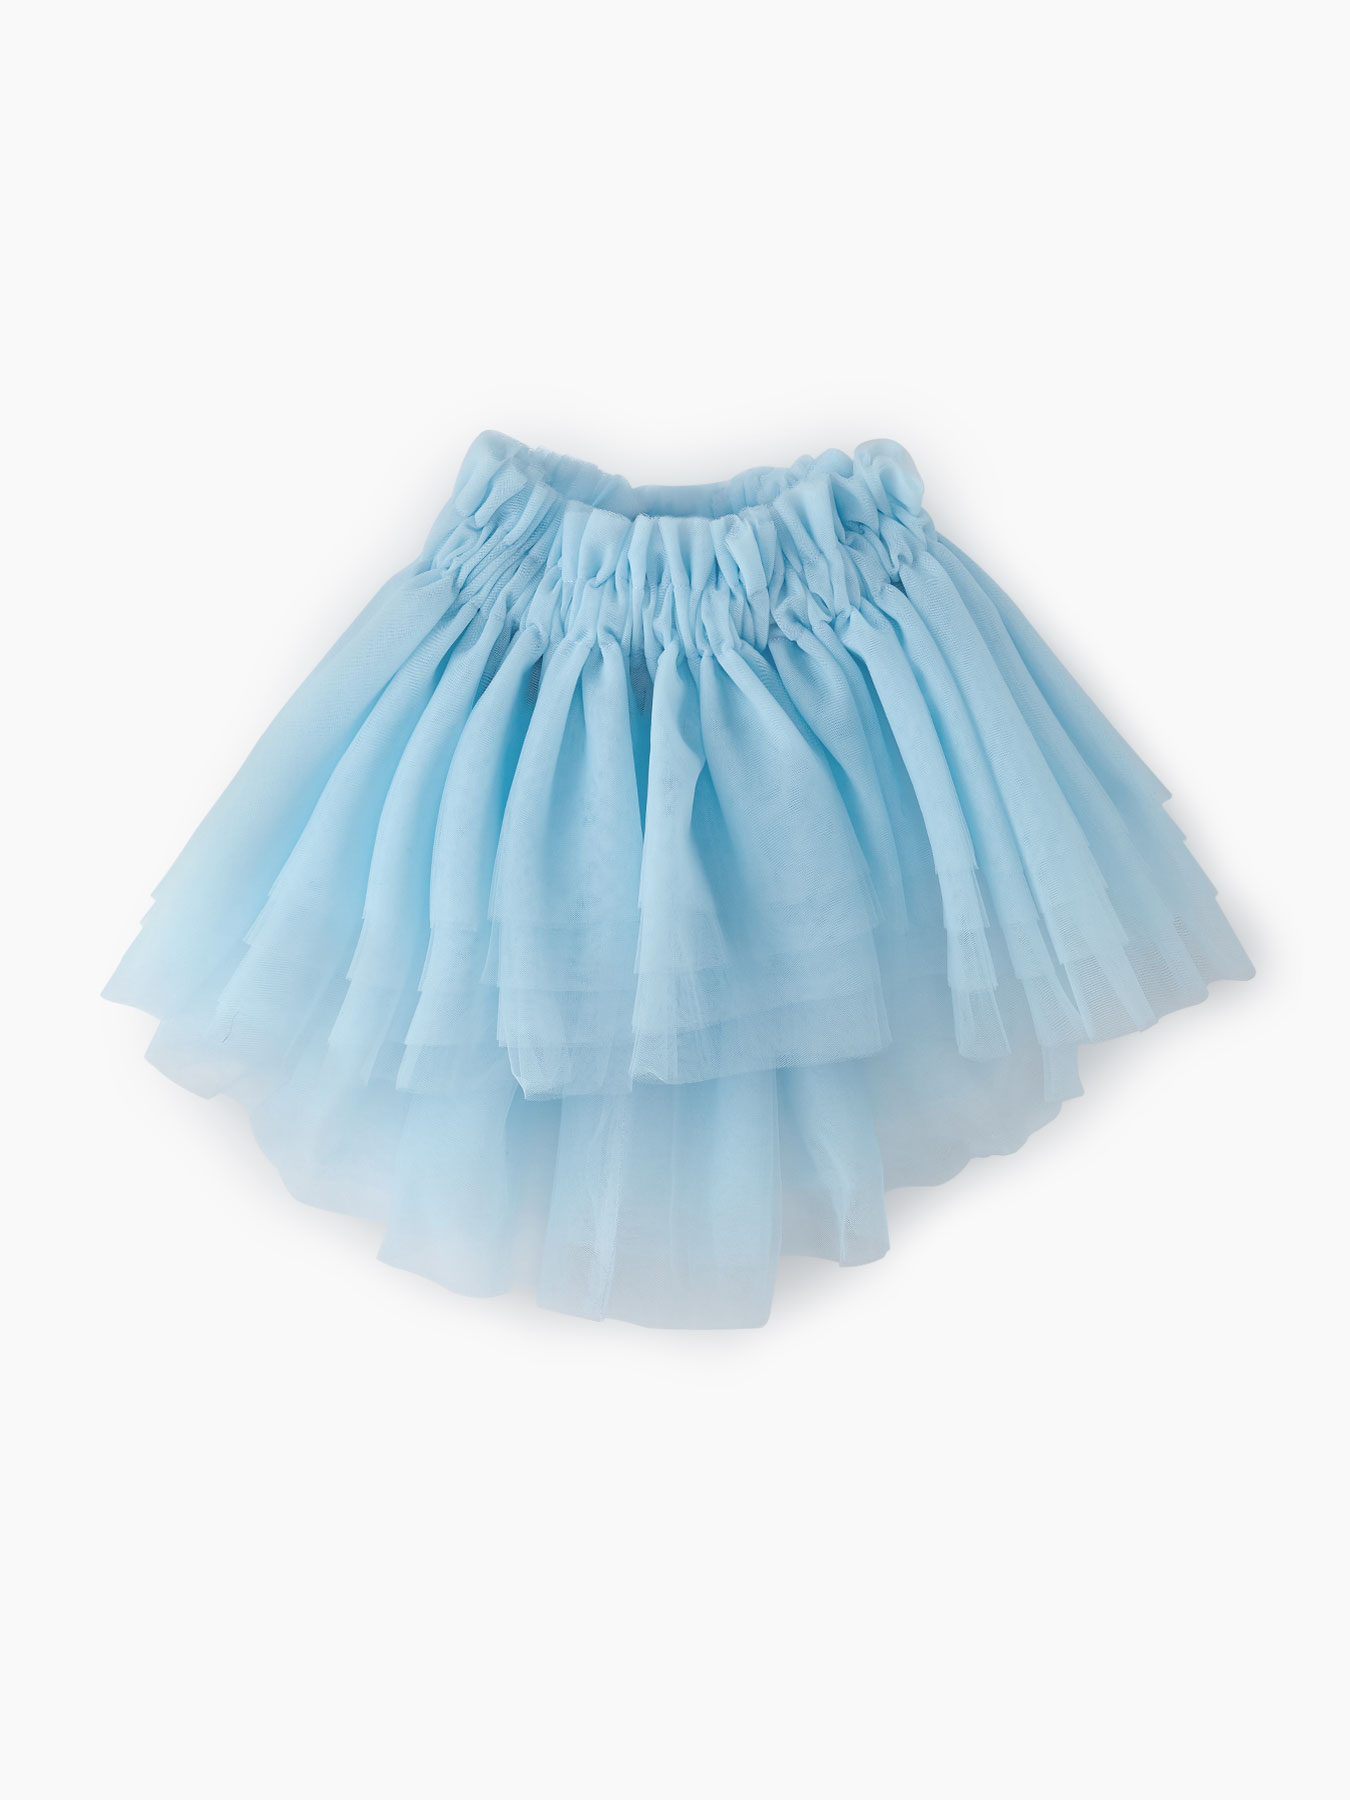 Пышная юбка из фатина (light blue, 80-98) Happy Baby голубой  80-98